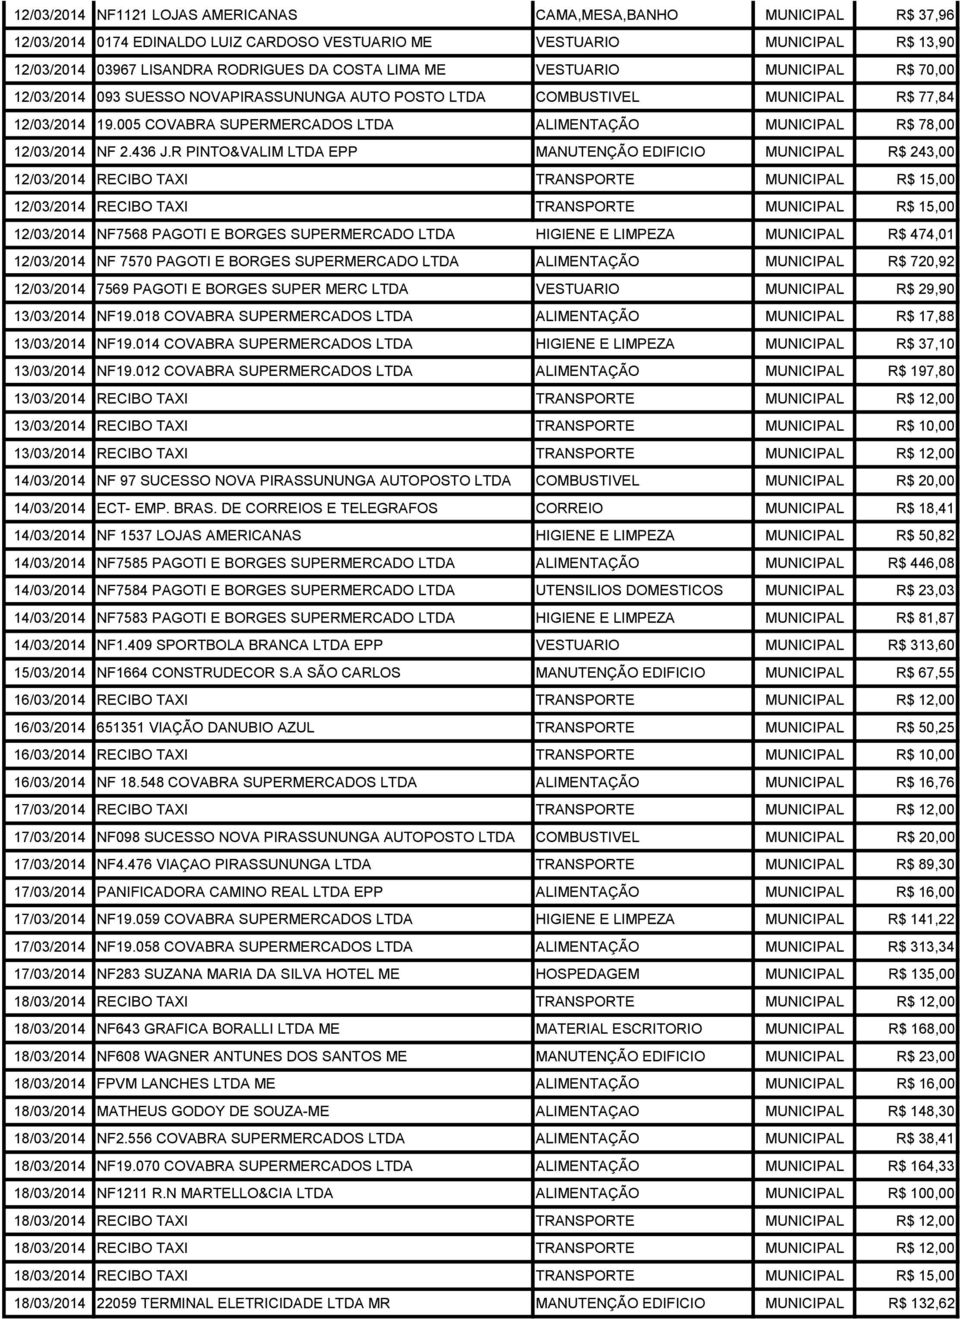 005 COVABRA SUPERMERCADOS LTDA ALIMENTAÇÃO MUNICIPAL R$ 78,00 12/03/2014 NF 2.436 J.